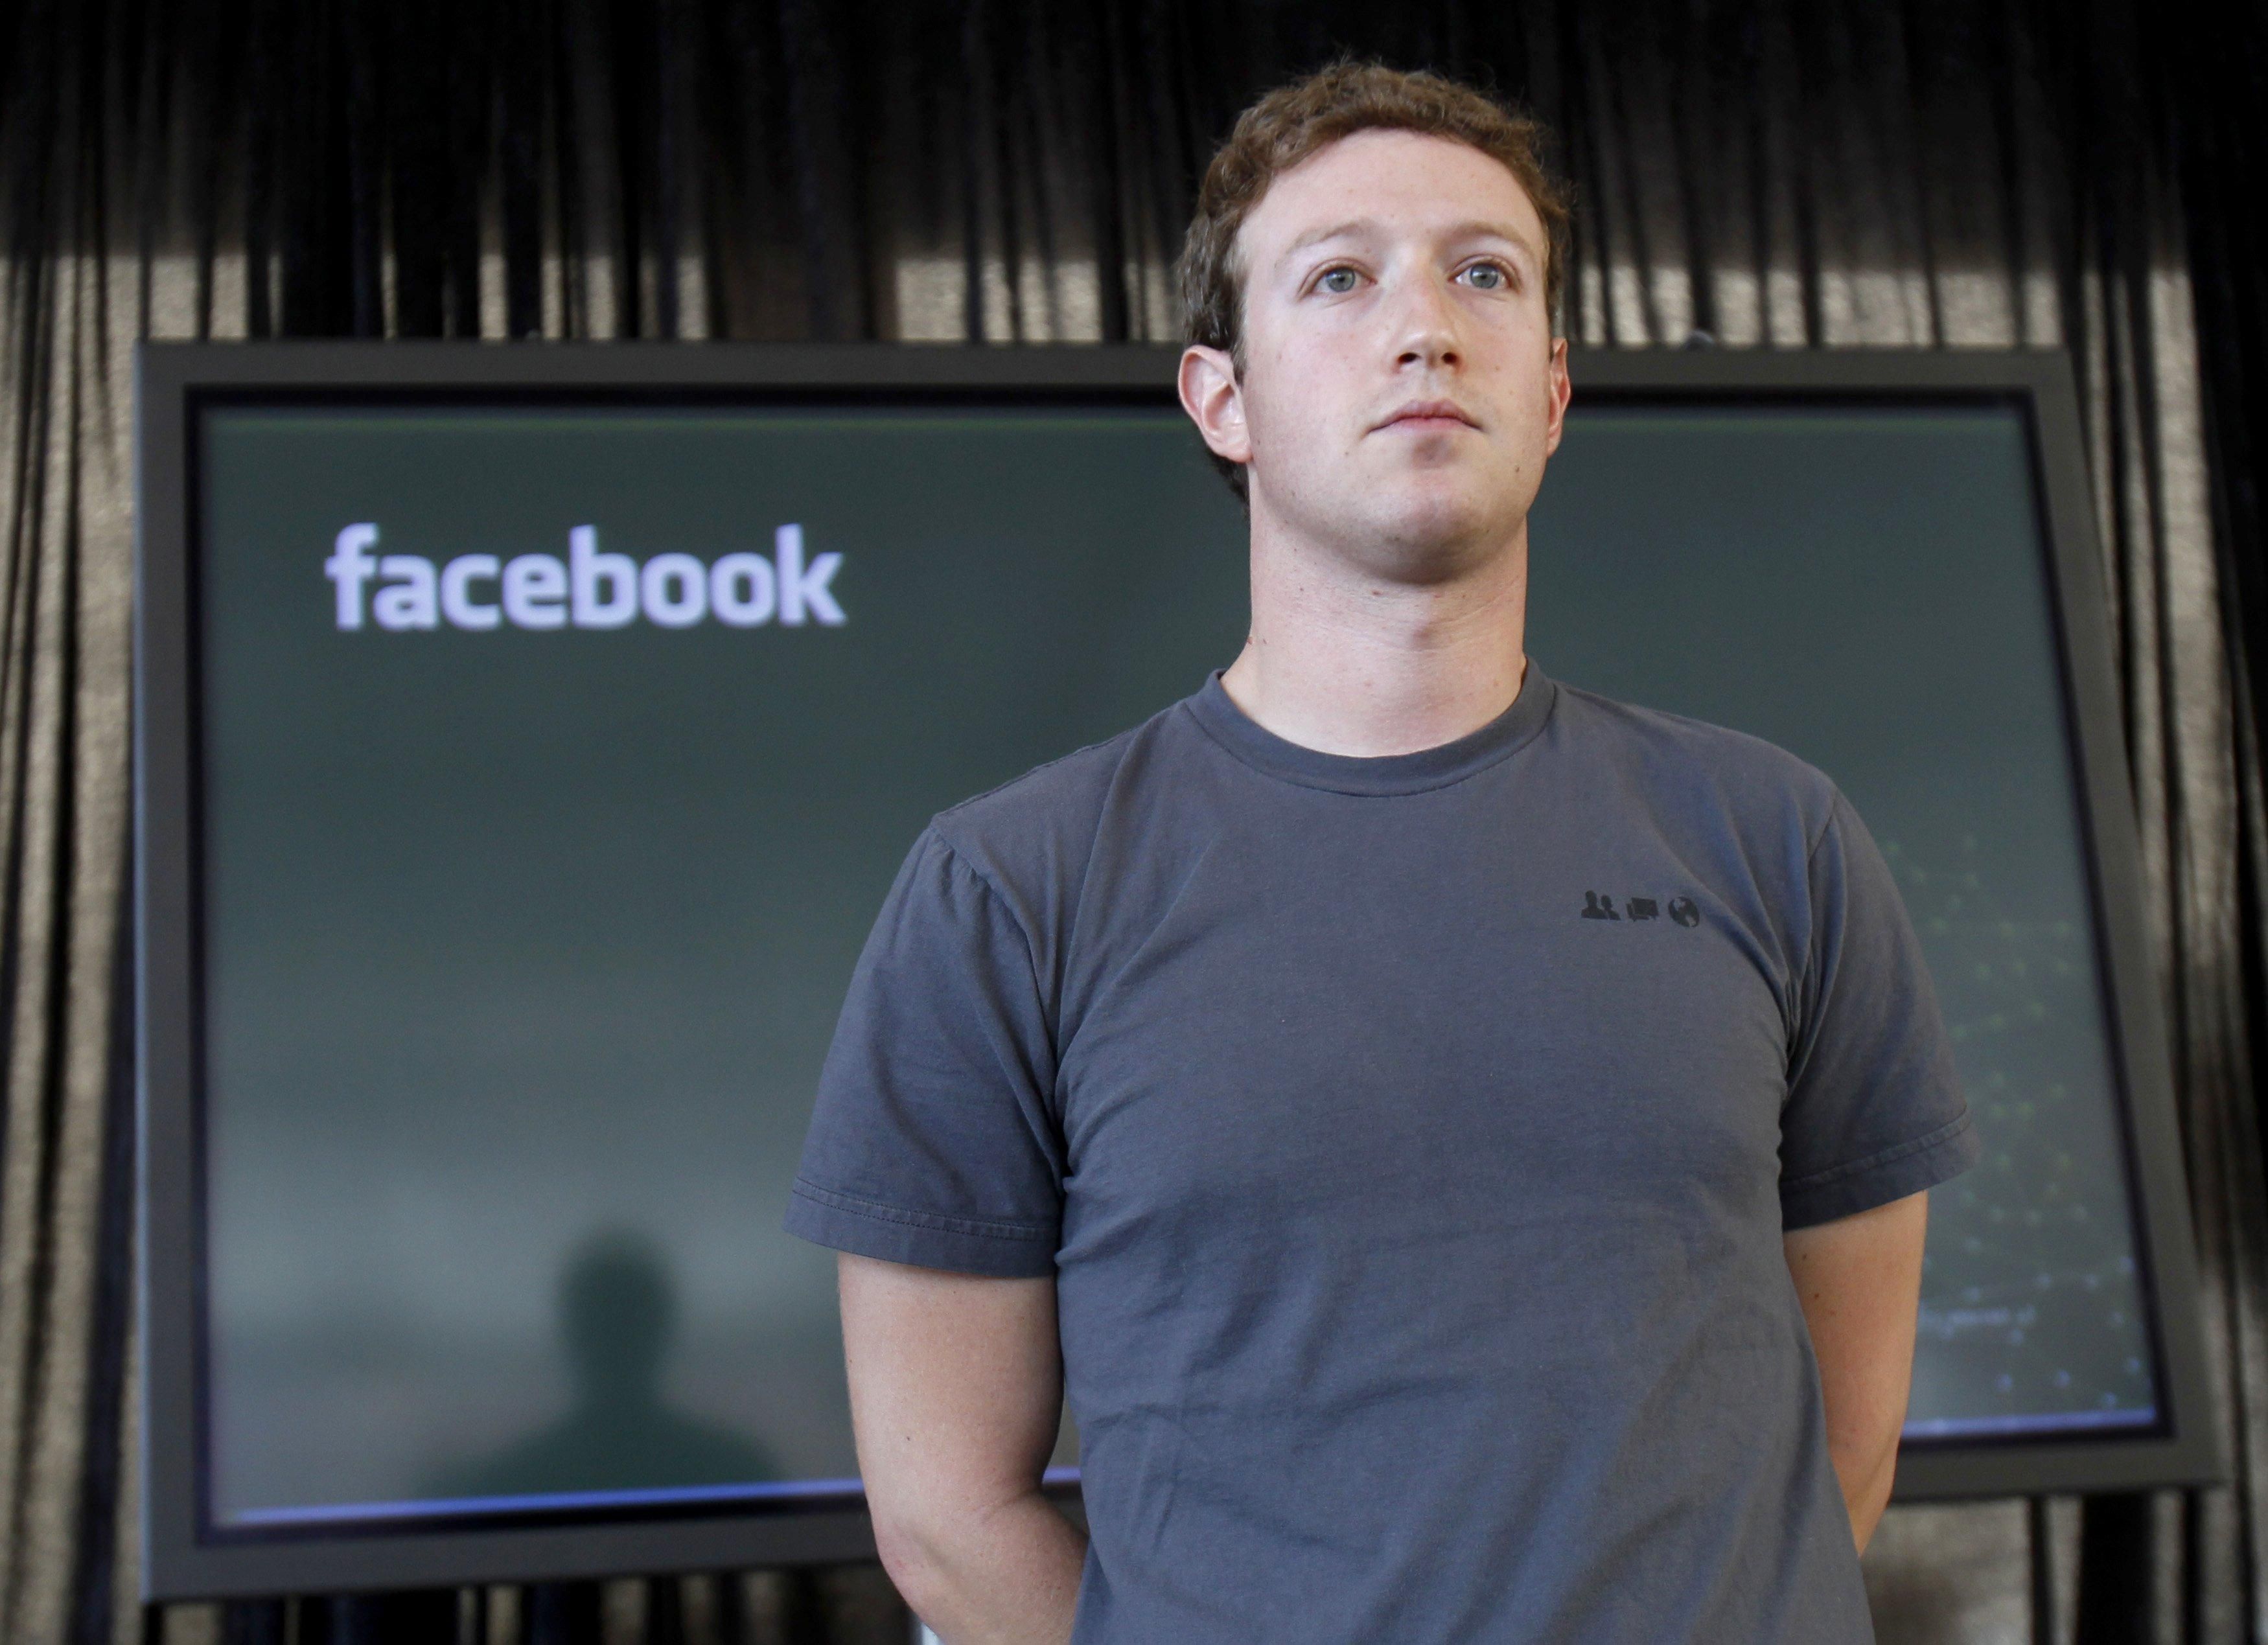 Акционеры Facebook предлагают освободить Цукерберга с должности главы правления